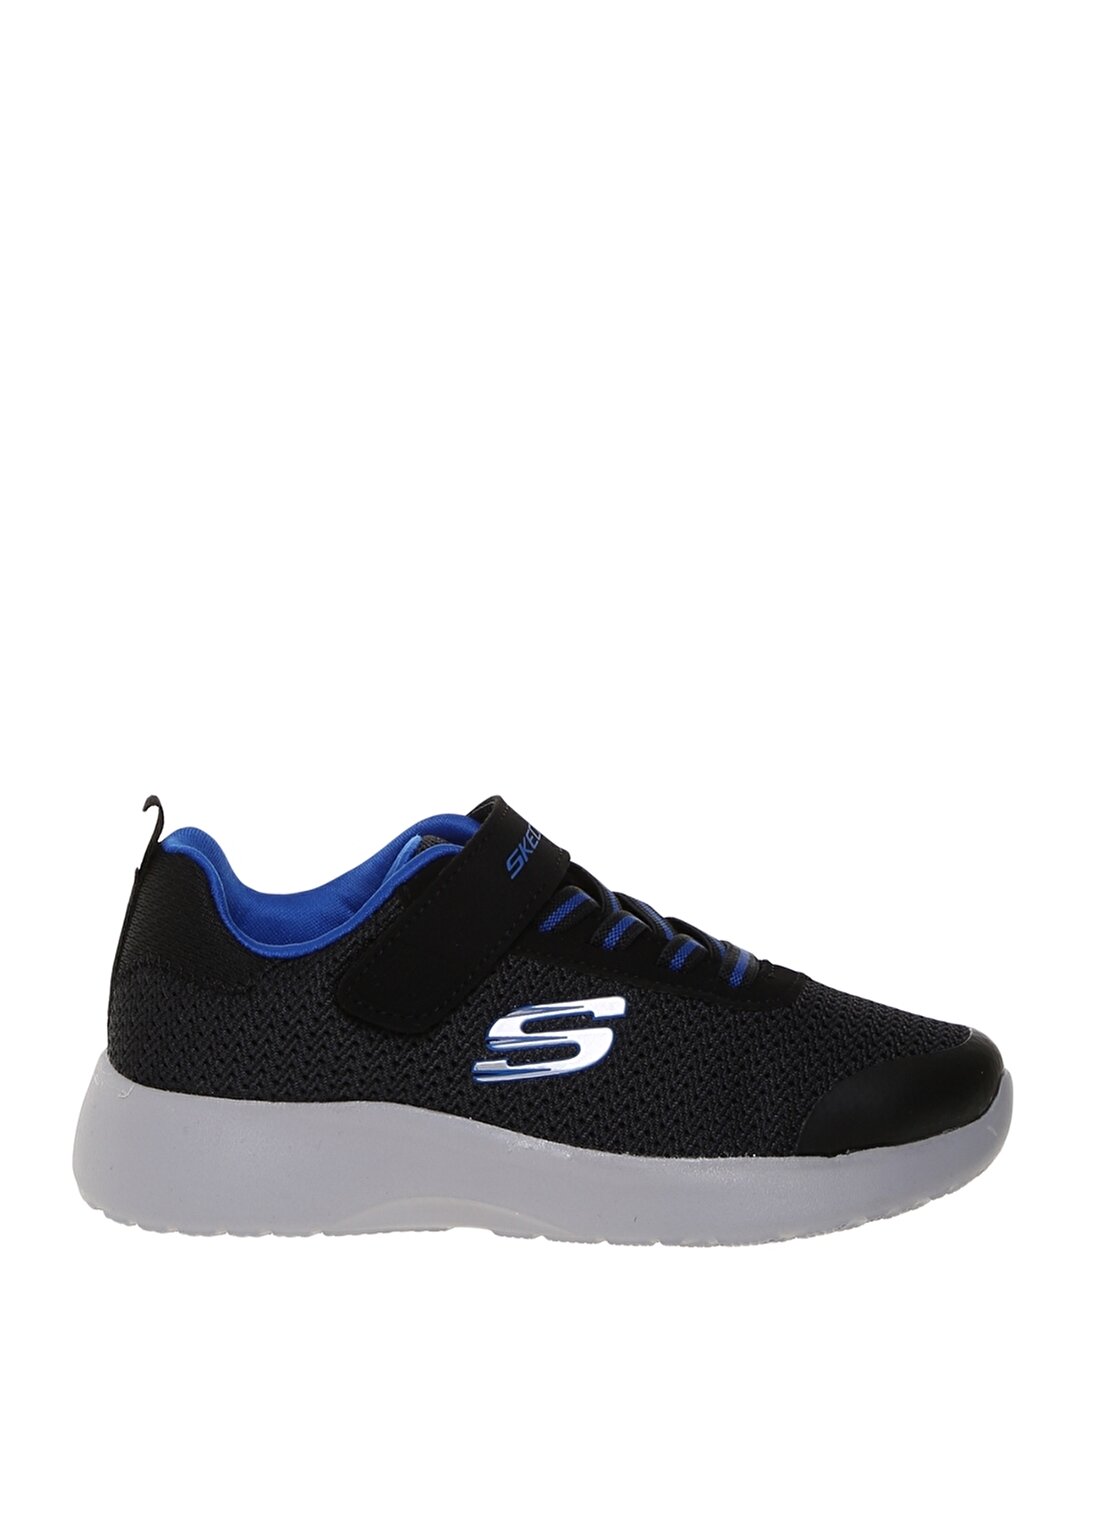 Skechers 81-97770L Bkry-Dyn Siyah - Mavi Erkek Çocuk Yürüyüş Ayakkabısı